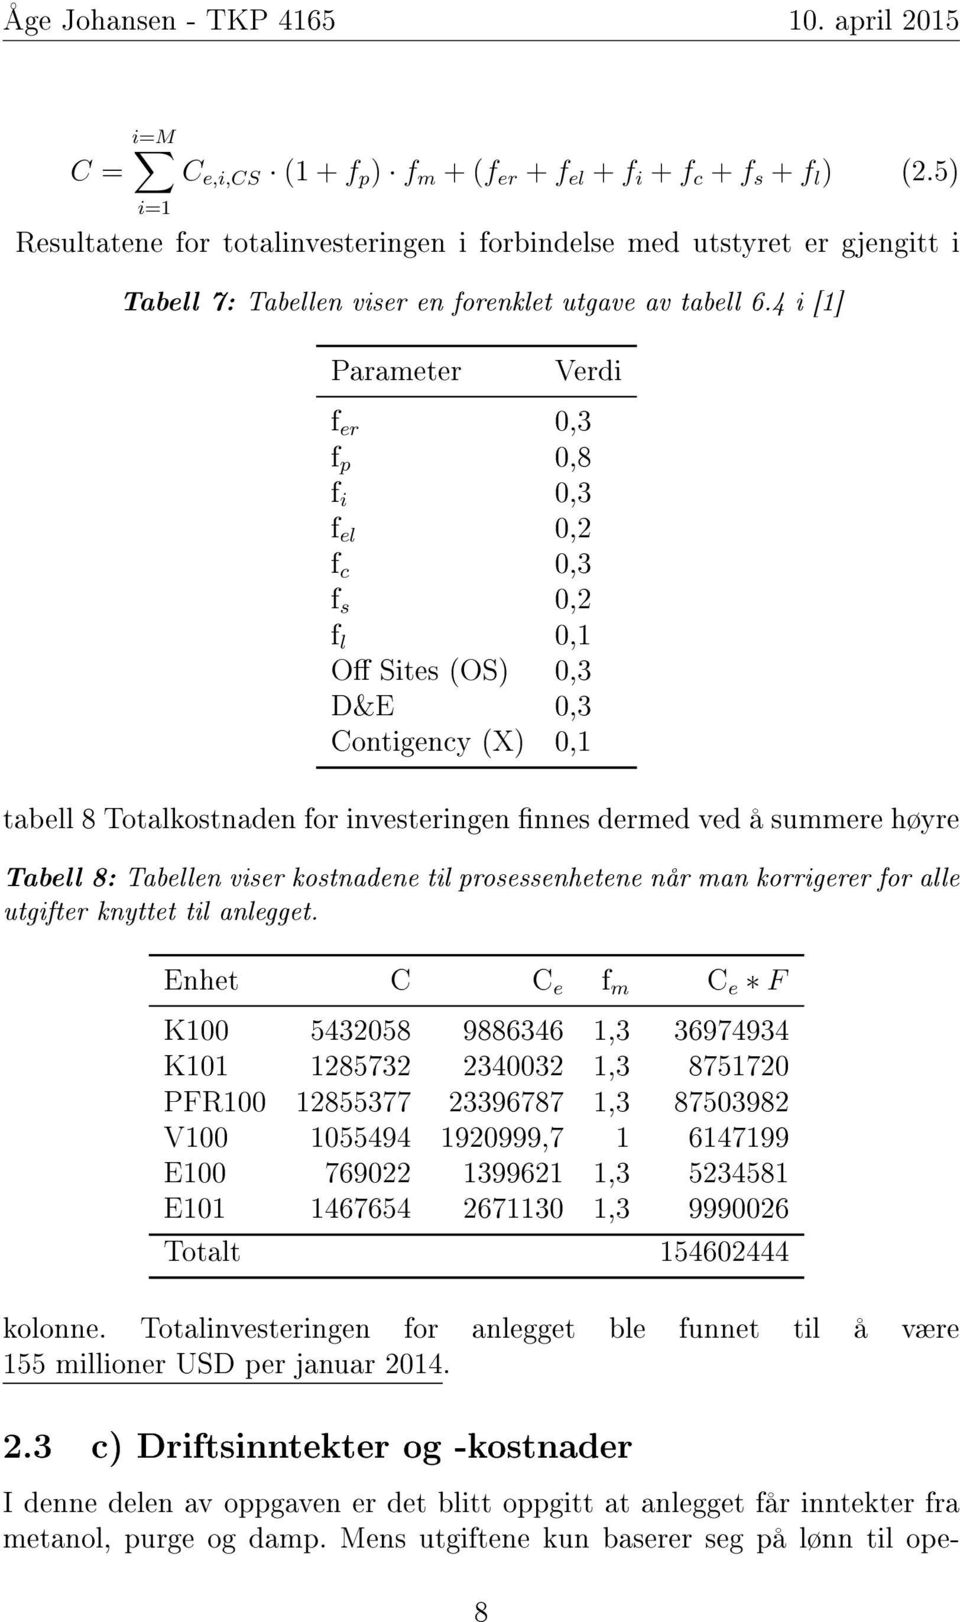 4 i [1] Parameter Verdi f er 0,3 f p 0,8 f i 0,3 f el 0,2 f c 0,3 f s 0,2 f l 0,1 O Sites (OS) 0,3 D&E 0,3 Contigency (X) 0,1 tabell 8 Totalkostnaden for investeringen nnes dermed ved å summere høyre